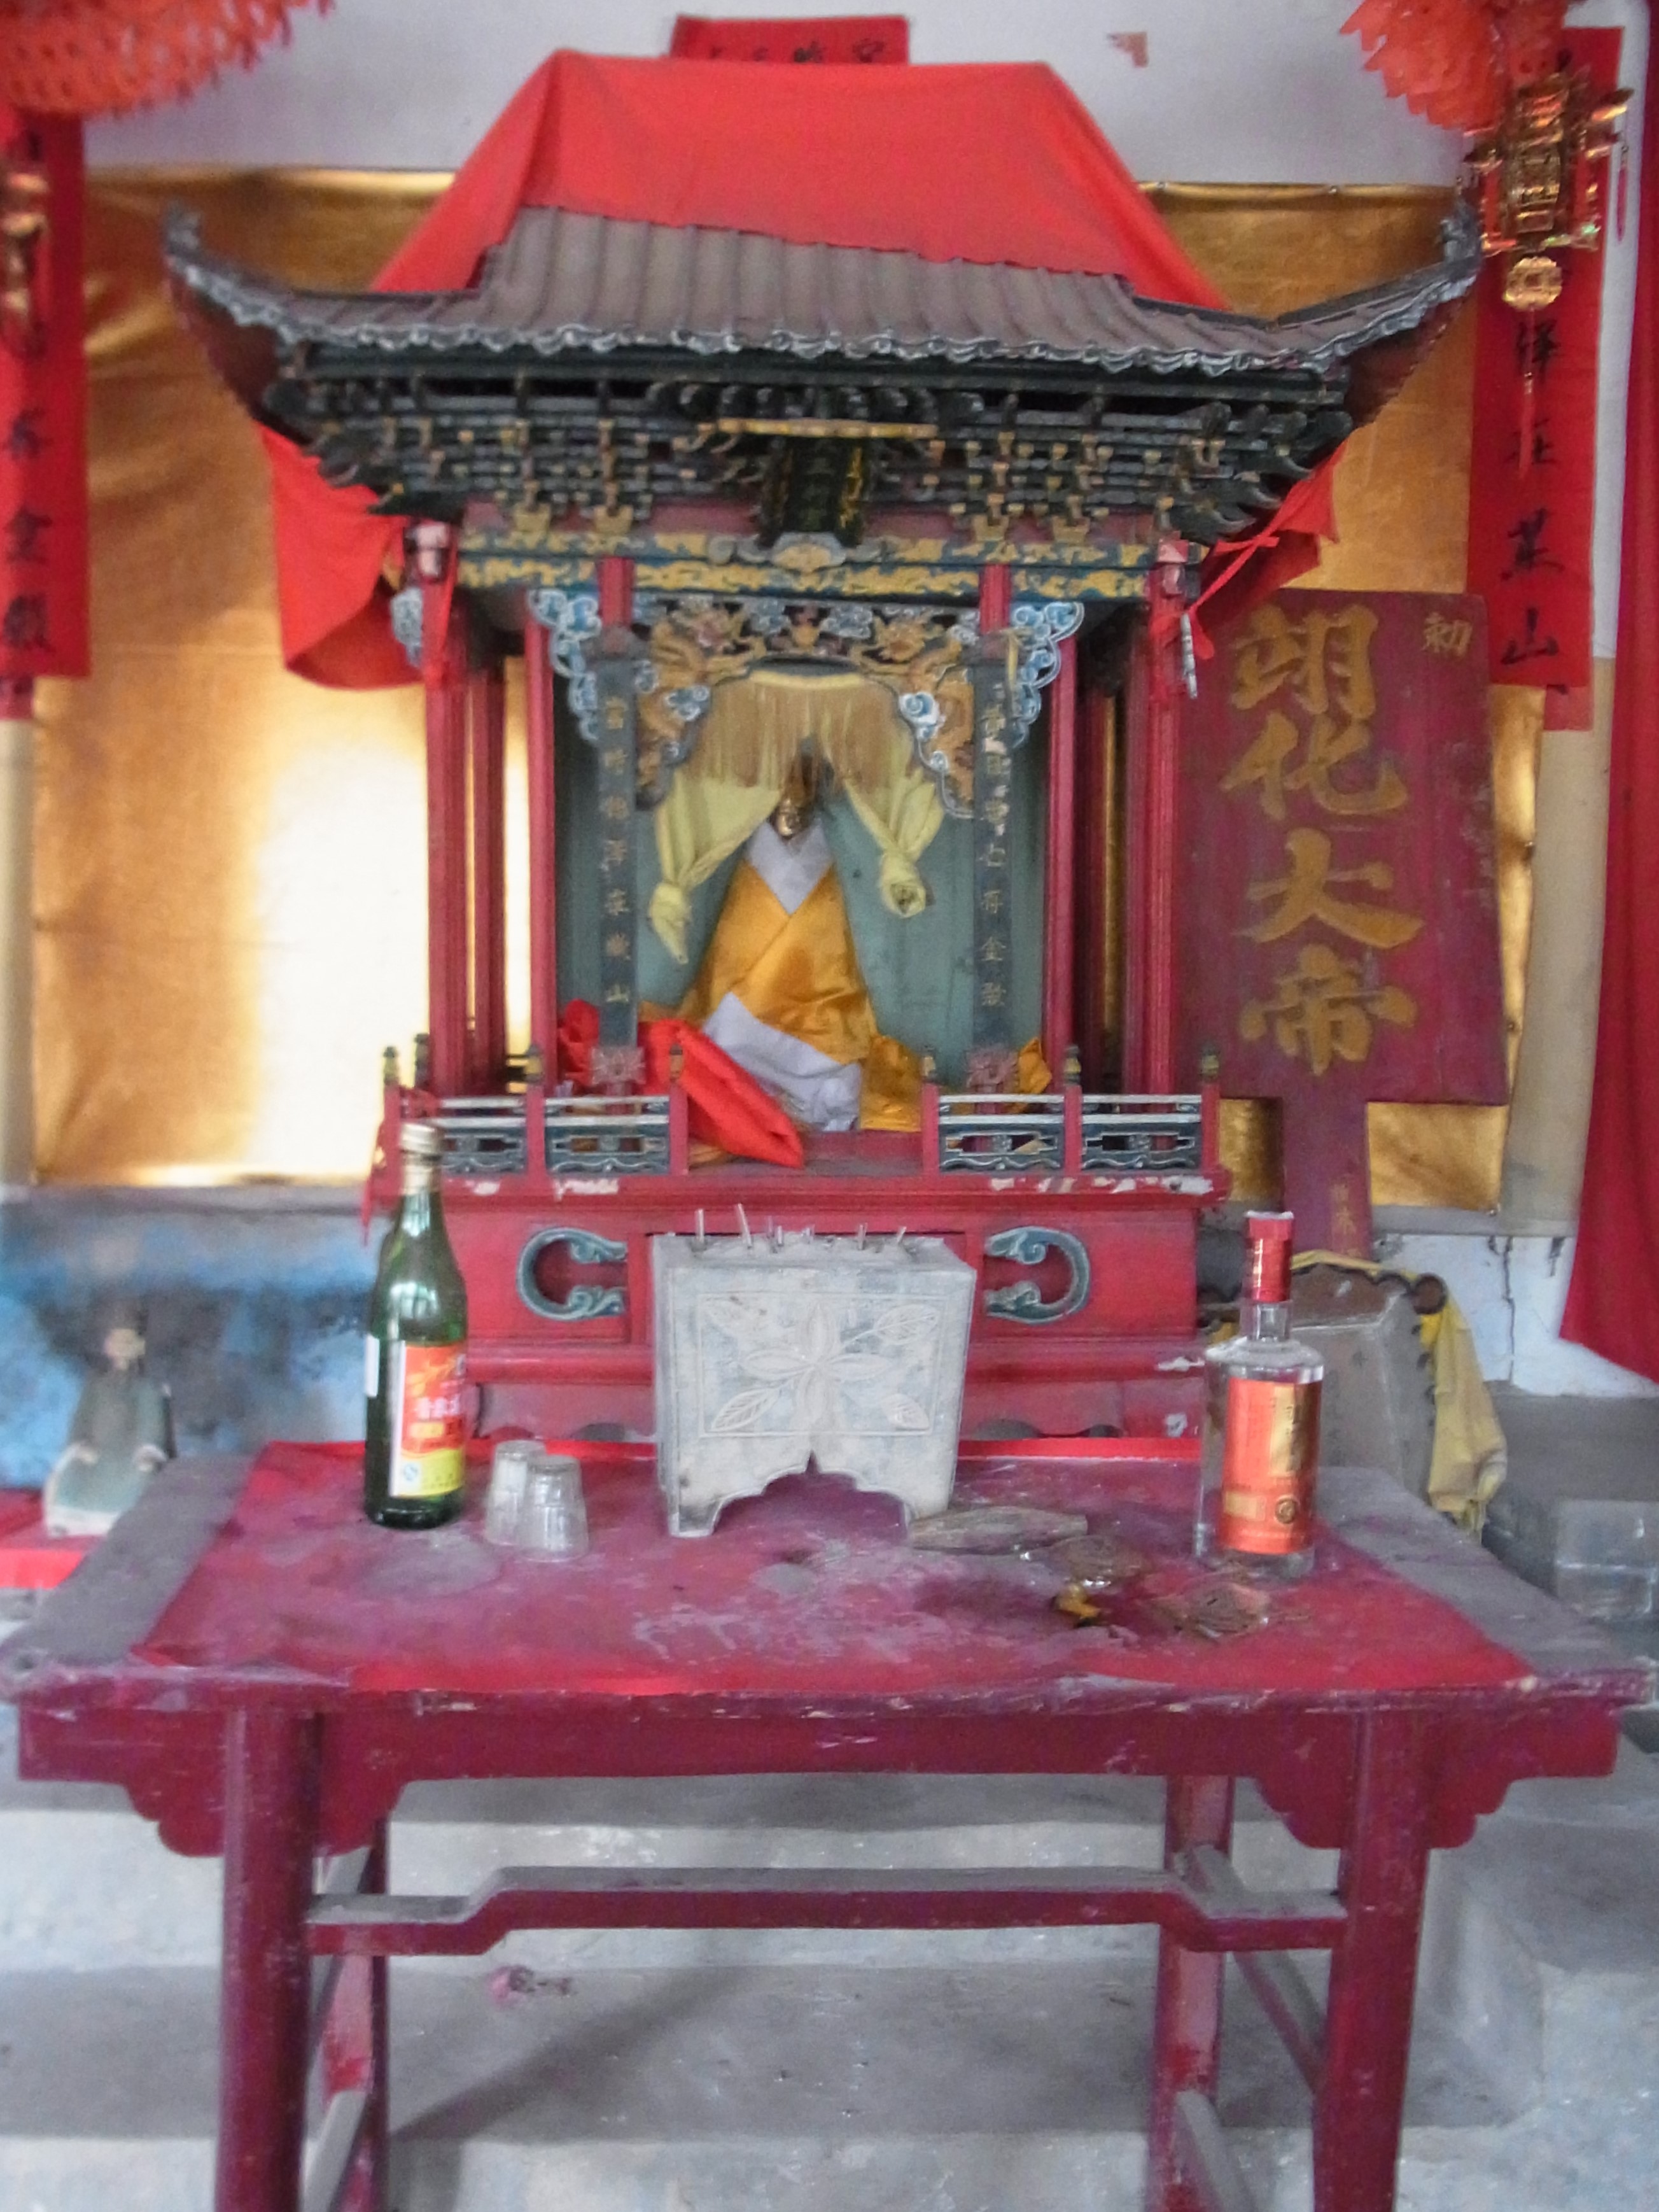 神社仏閣は「破除迷信」運動により禁止され破壊された。写真は30年間山中に隠され、1980年代に復活した「大王像」（雨乞いの神）